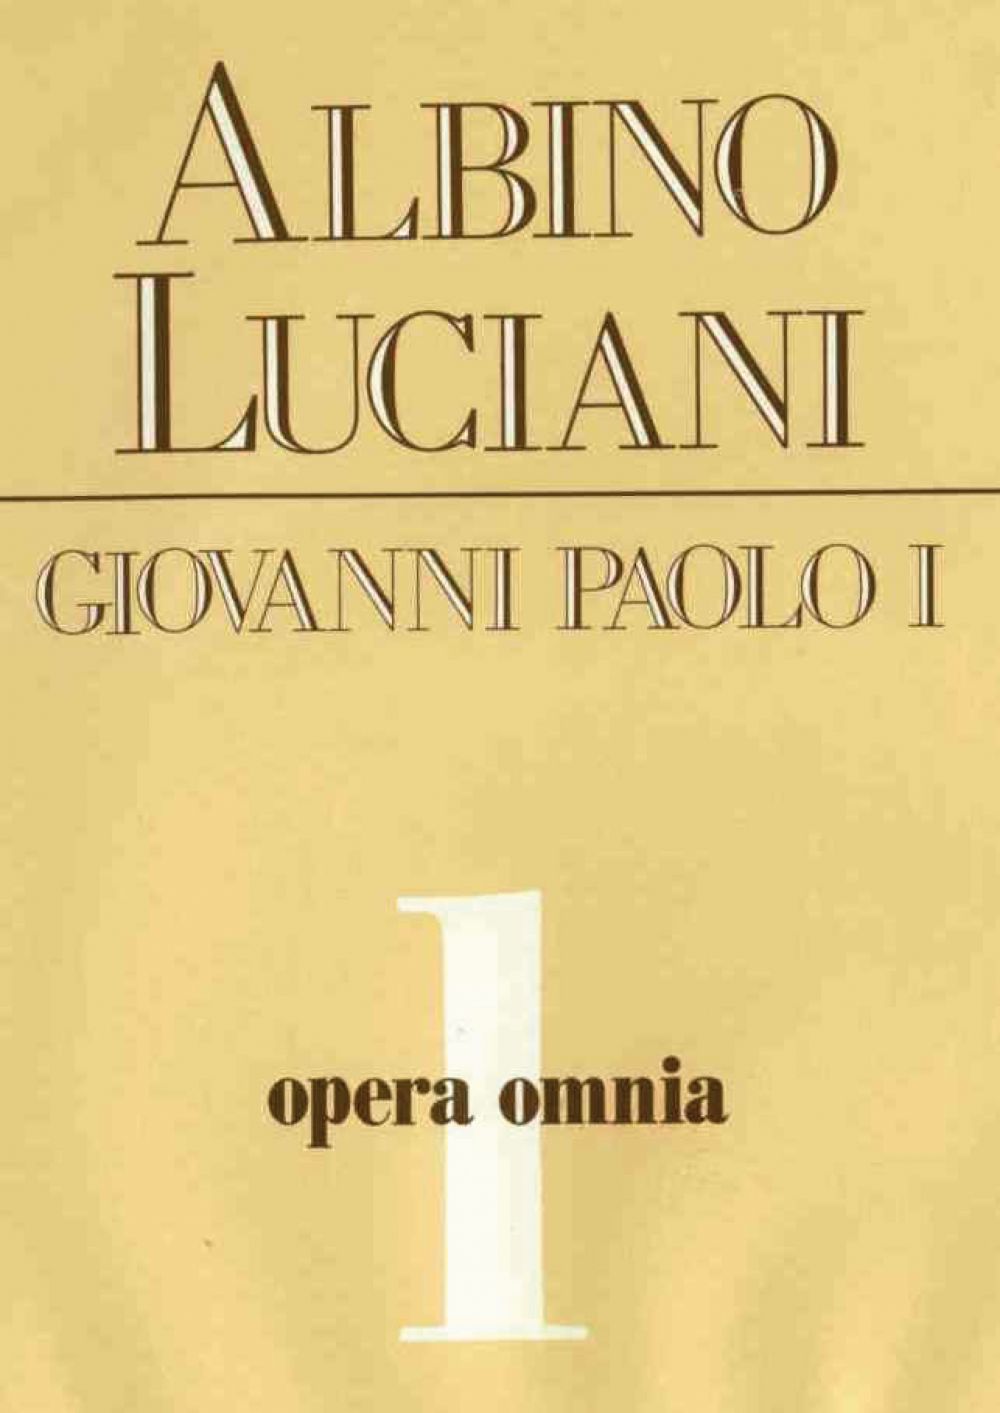 Opera omnia [vol_1] / Catechetica in briciole-L'Origine dell'Anima umana secondo Antonio Rosmini-Illustrissimi